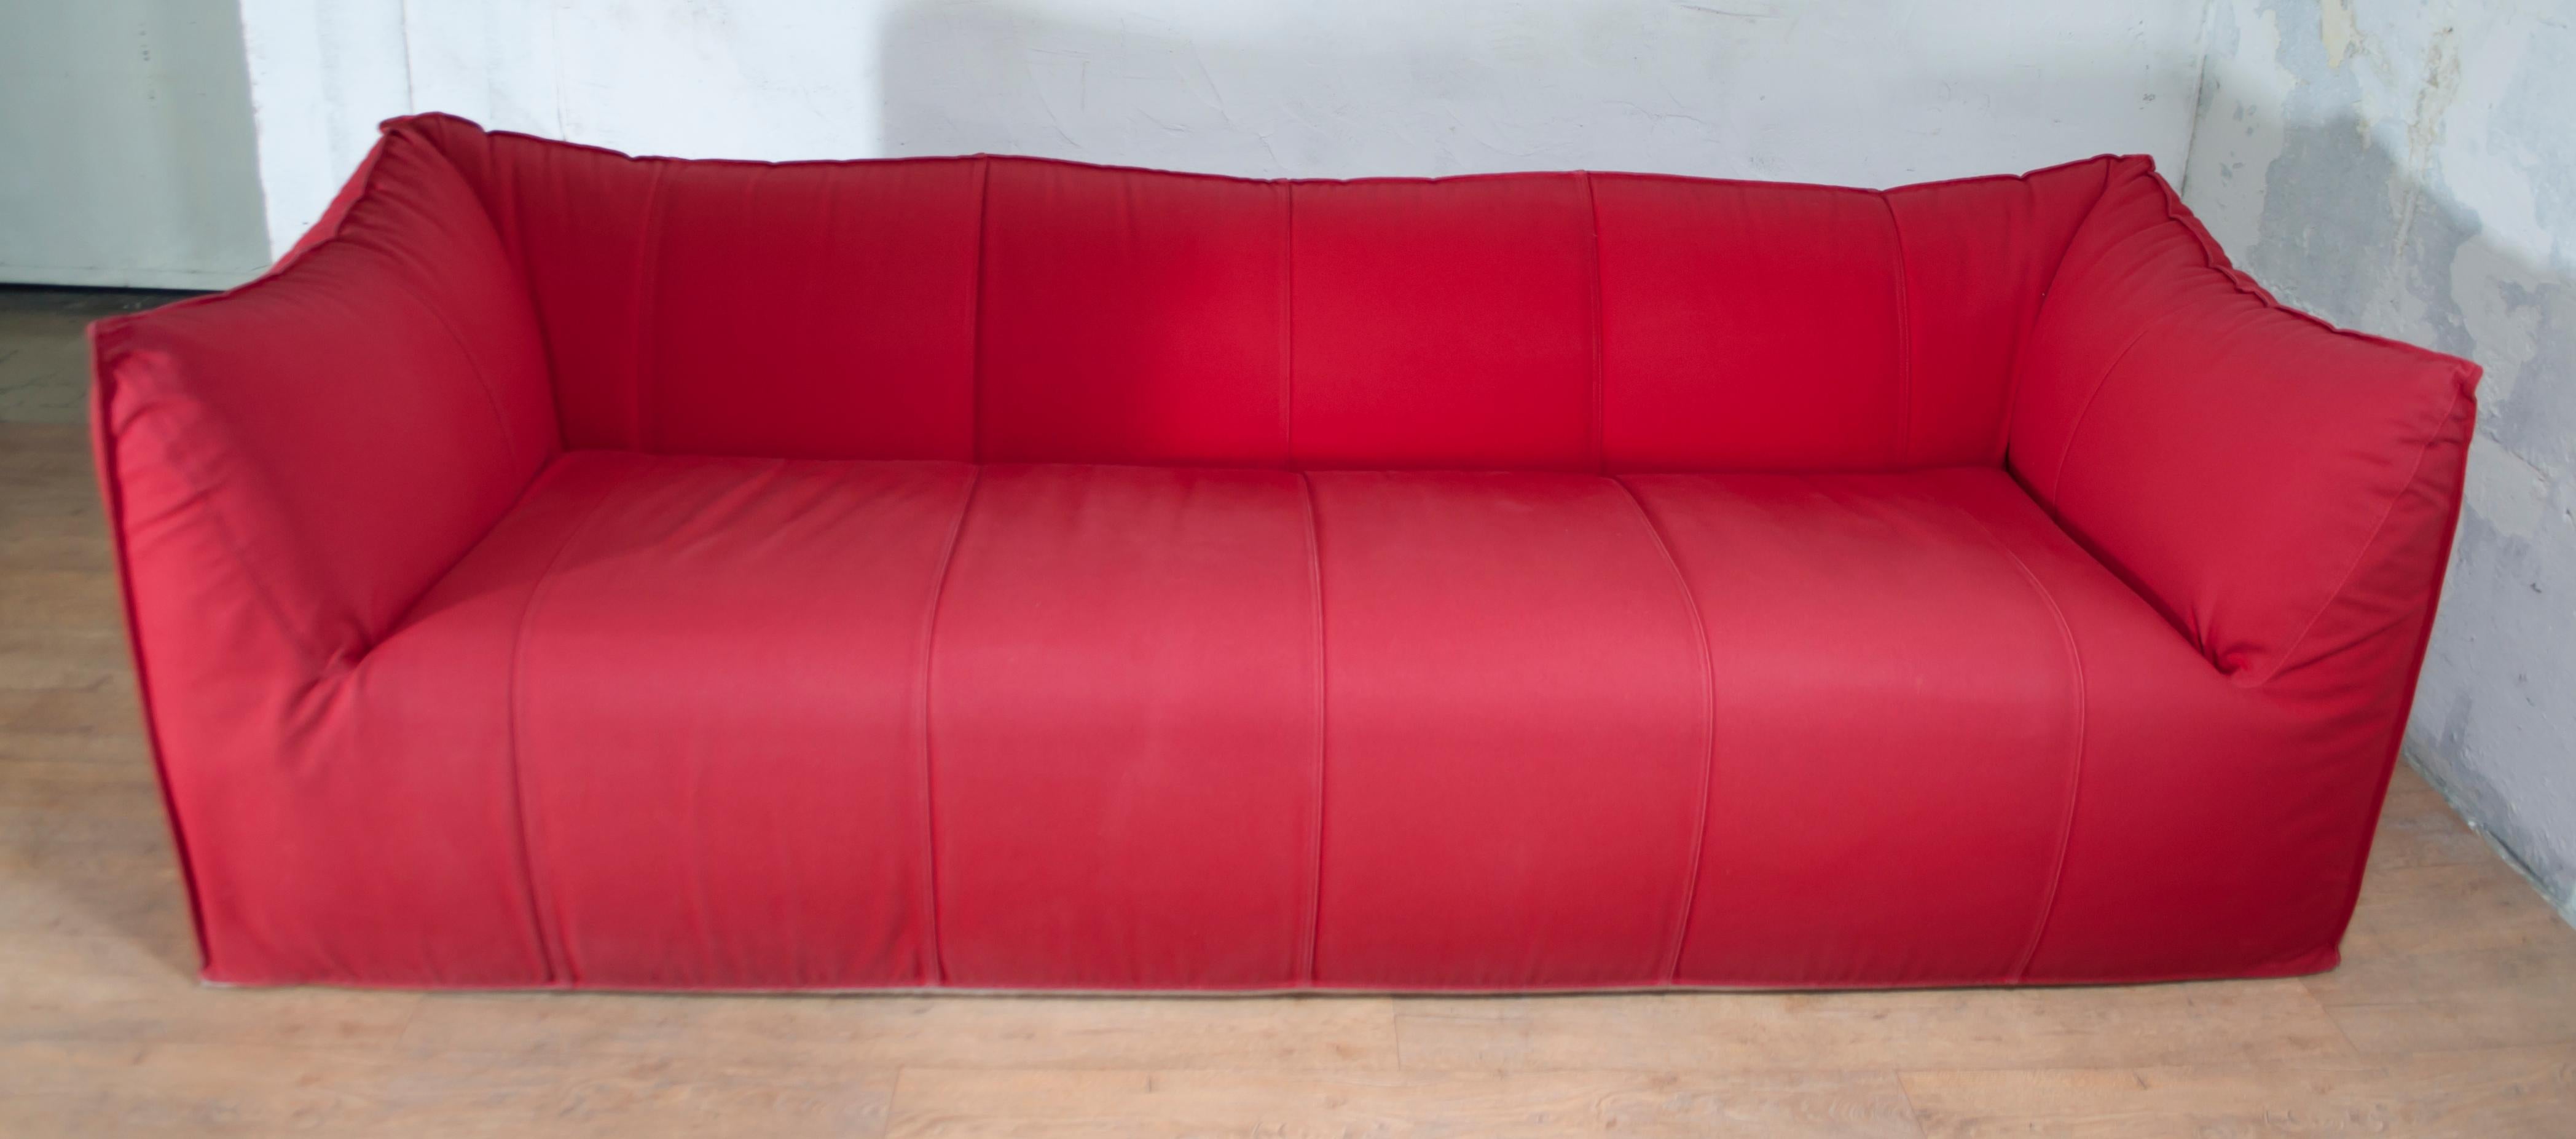 tribambola sofa